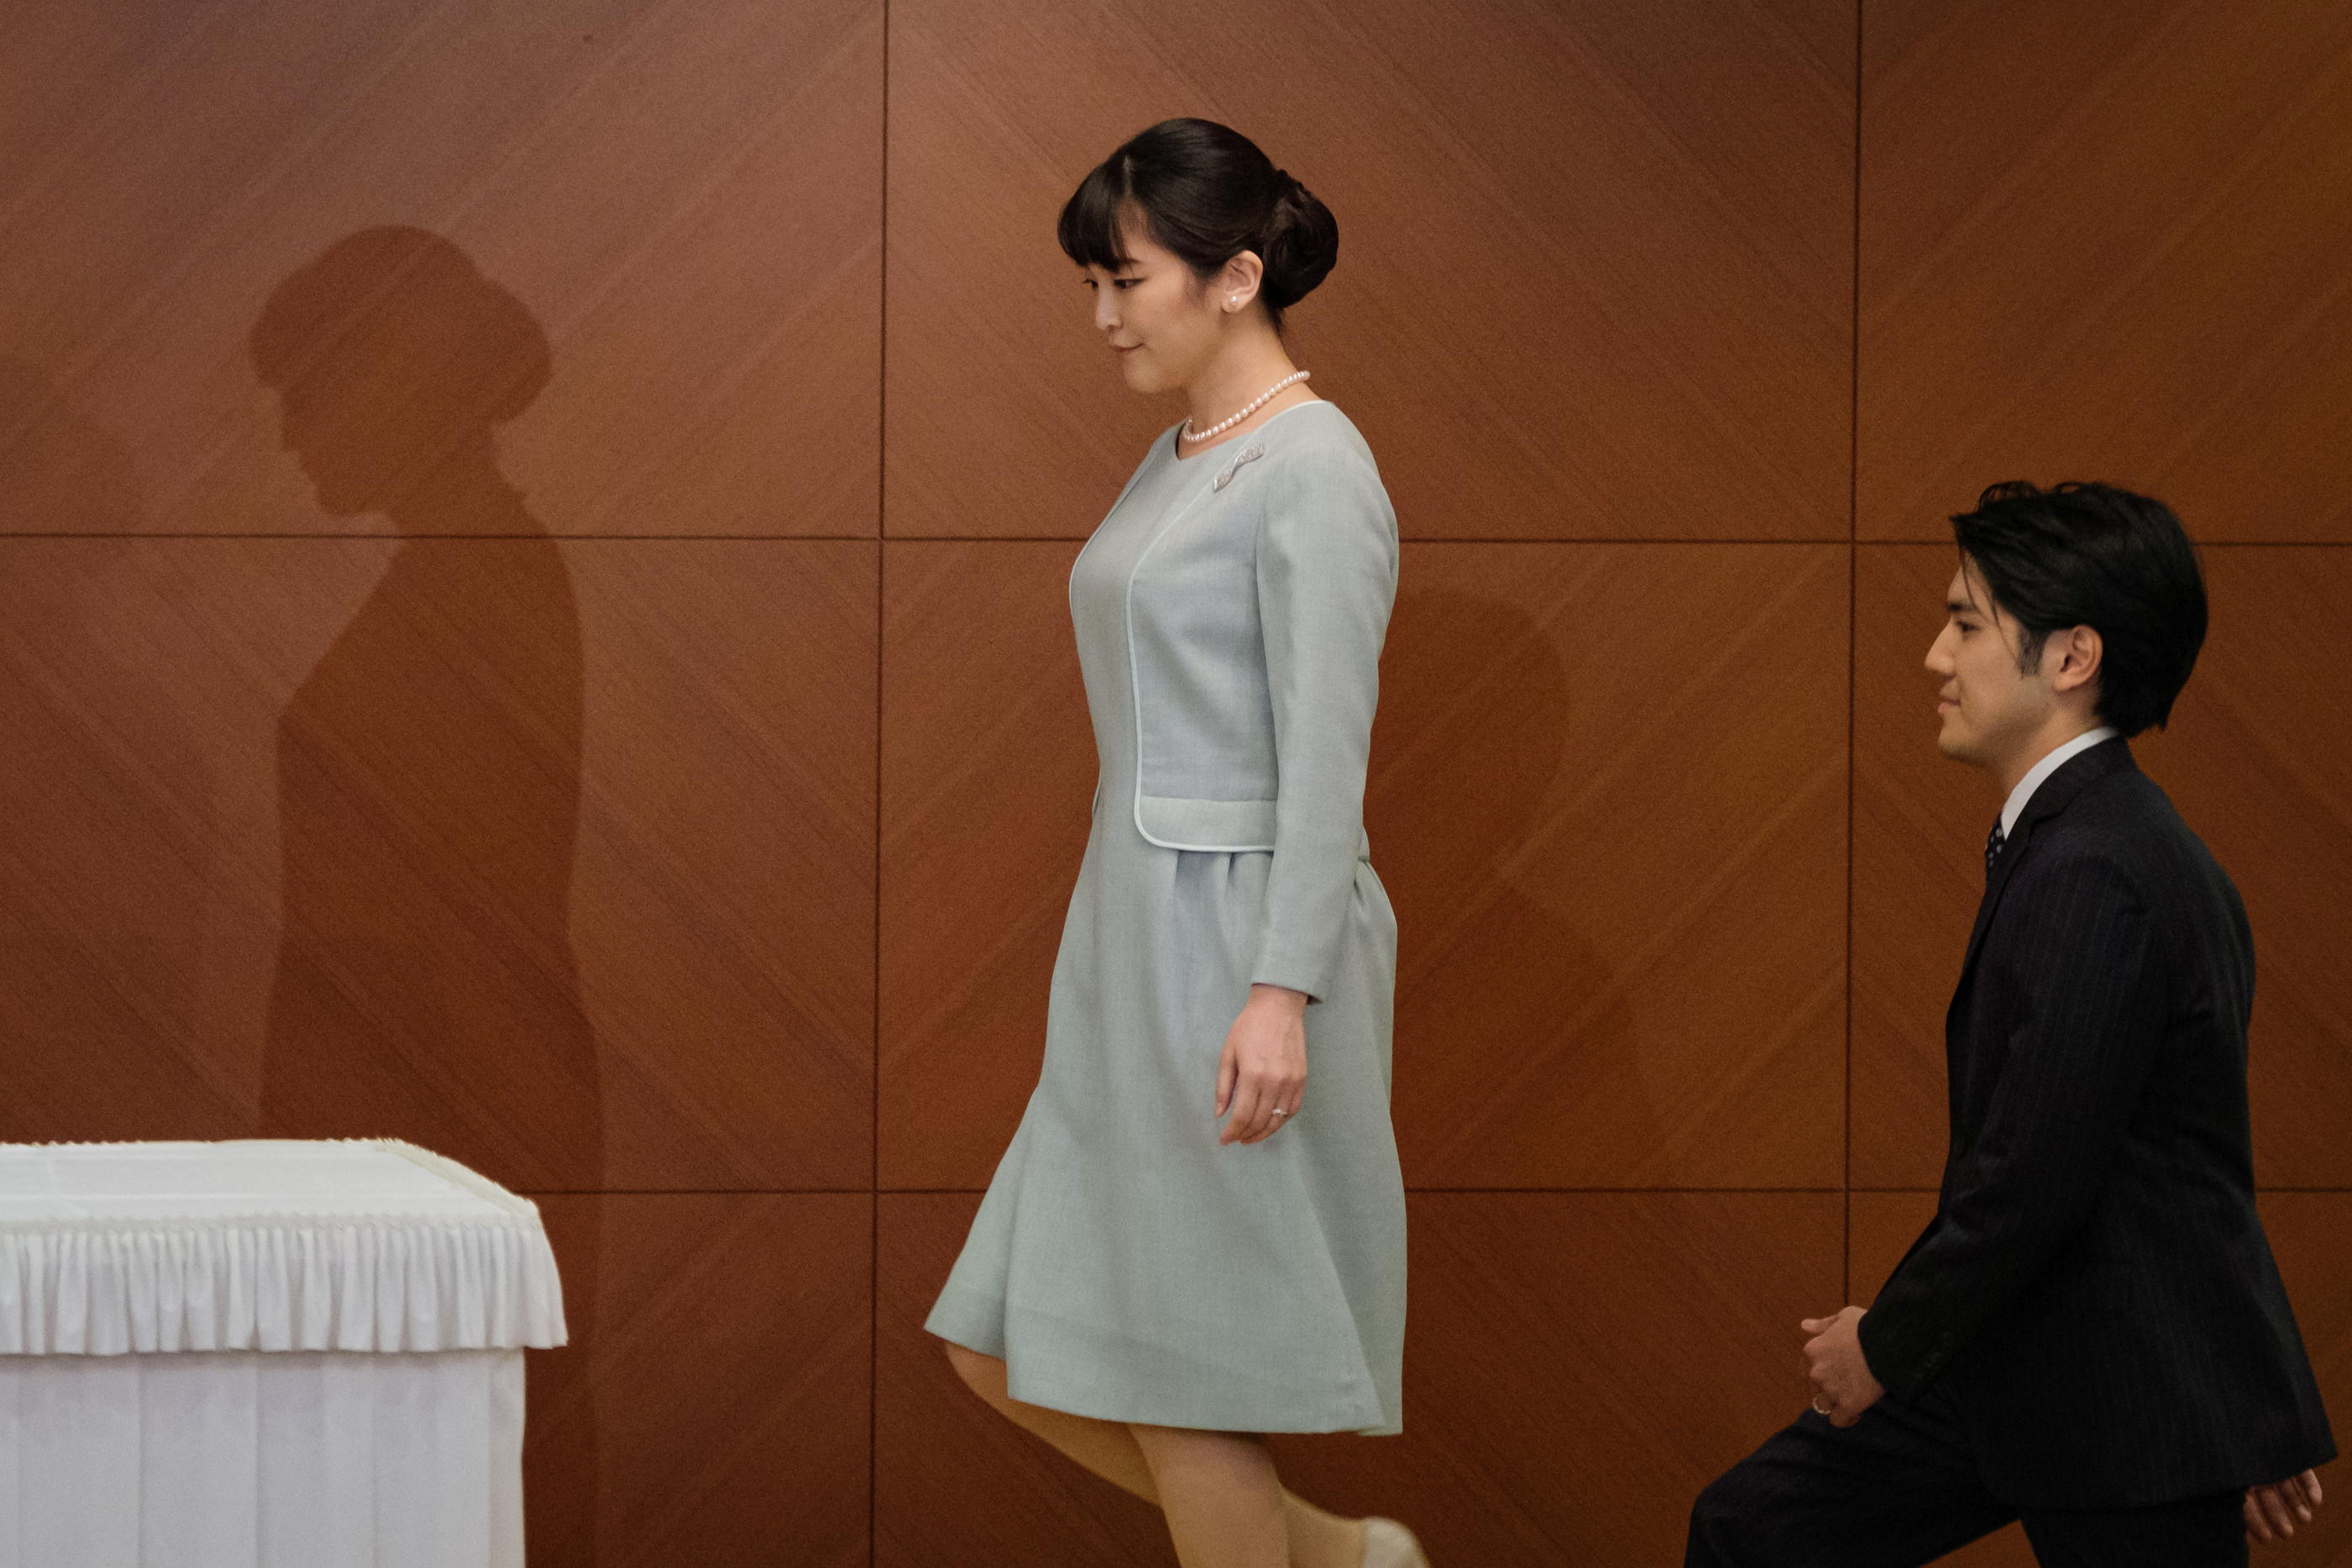 Tokyo, Japon, le 26 octobre 2021. La princesse Mako et son mari Kei Komuro arrivent à une conférence de presse pour annoncer l'enregistrement de leur mariage. Nicolas Datiche/REUTERS